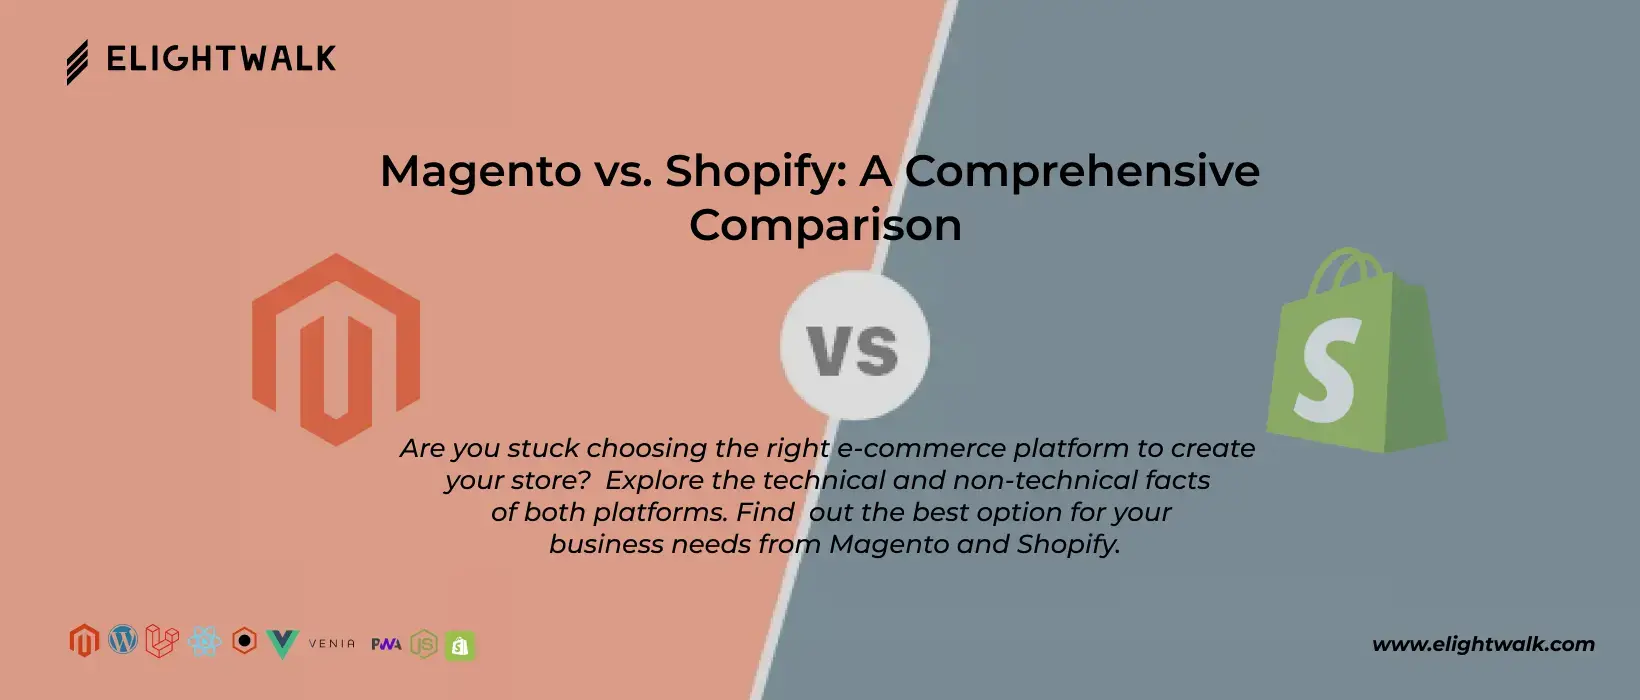 Magento vs Shopify comparison